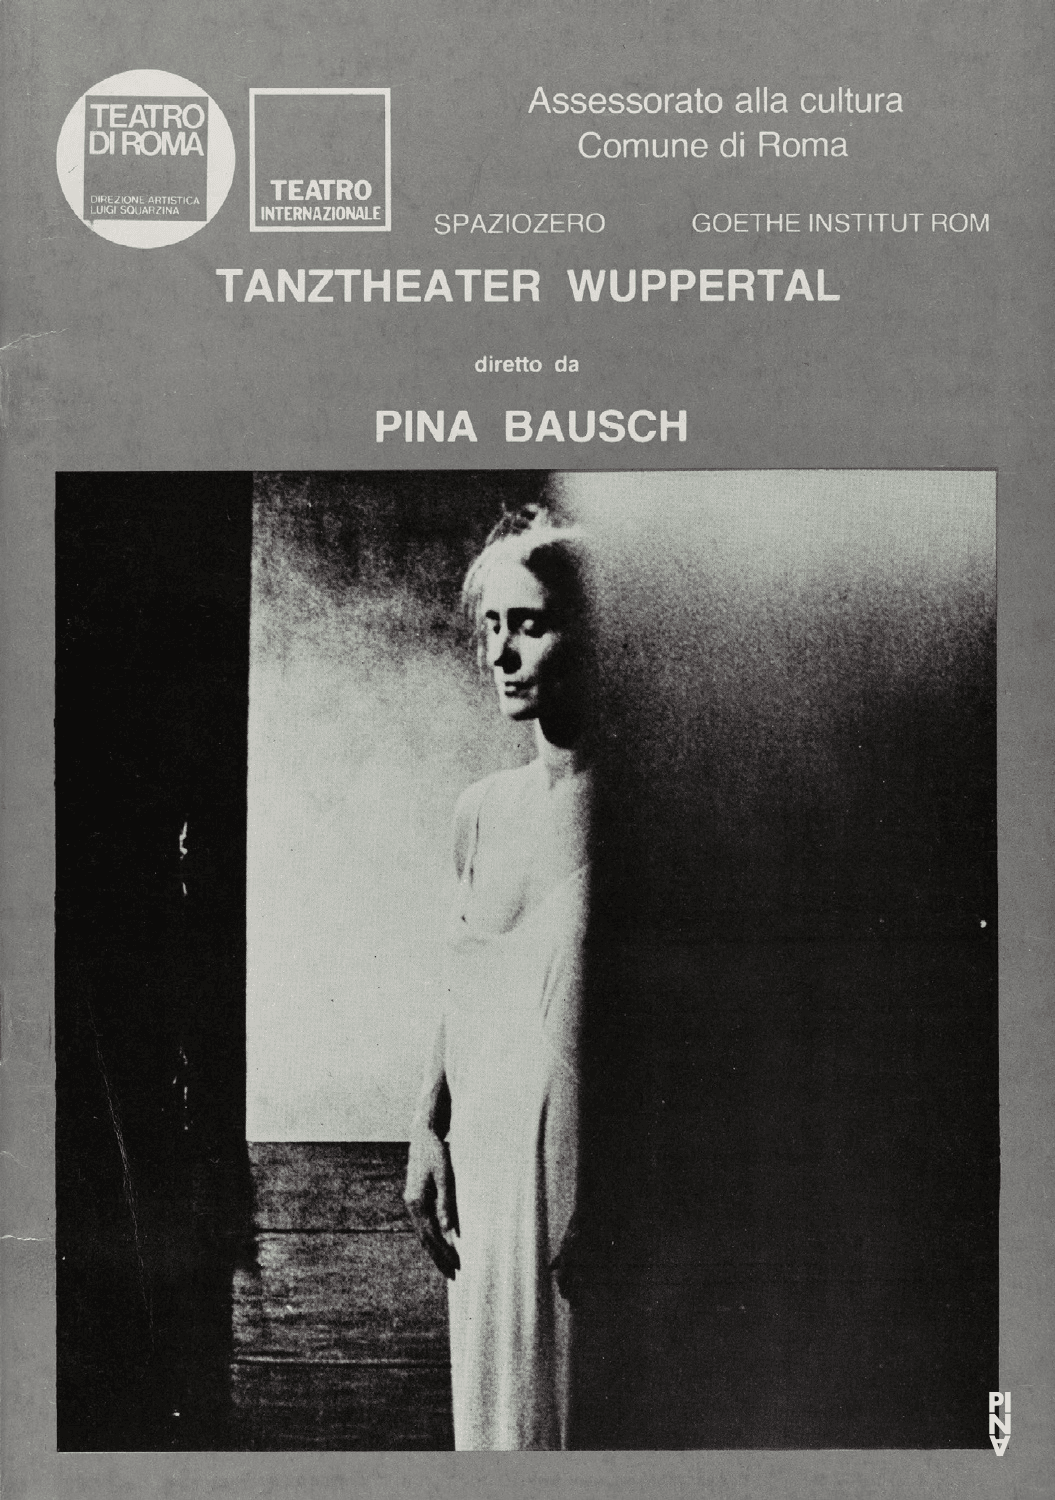 Programme pour « Café Müller » et « 1980 – Une pièce de Pina Bausch » de Pina Bausch avec Tanztheater Wuppertal à Rome, 28 sept. 1982 – 1 oct. 1982